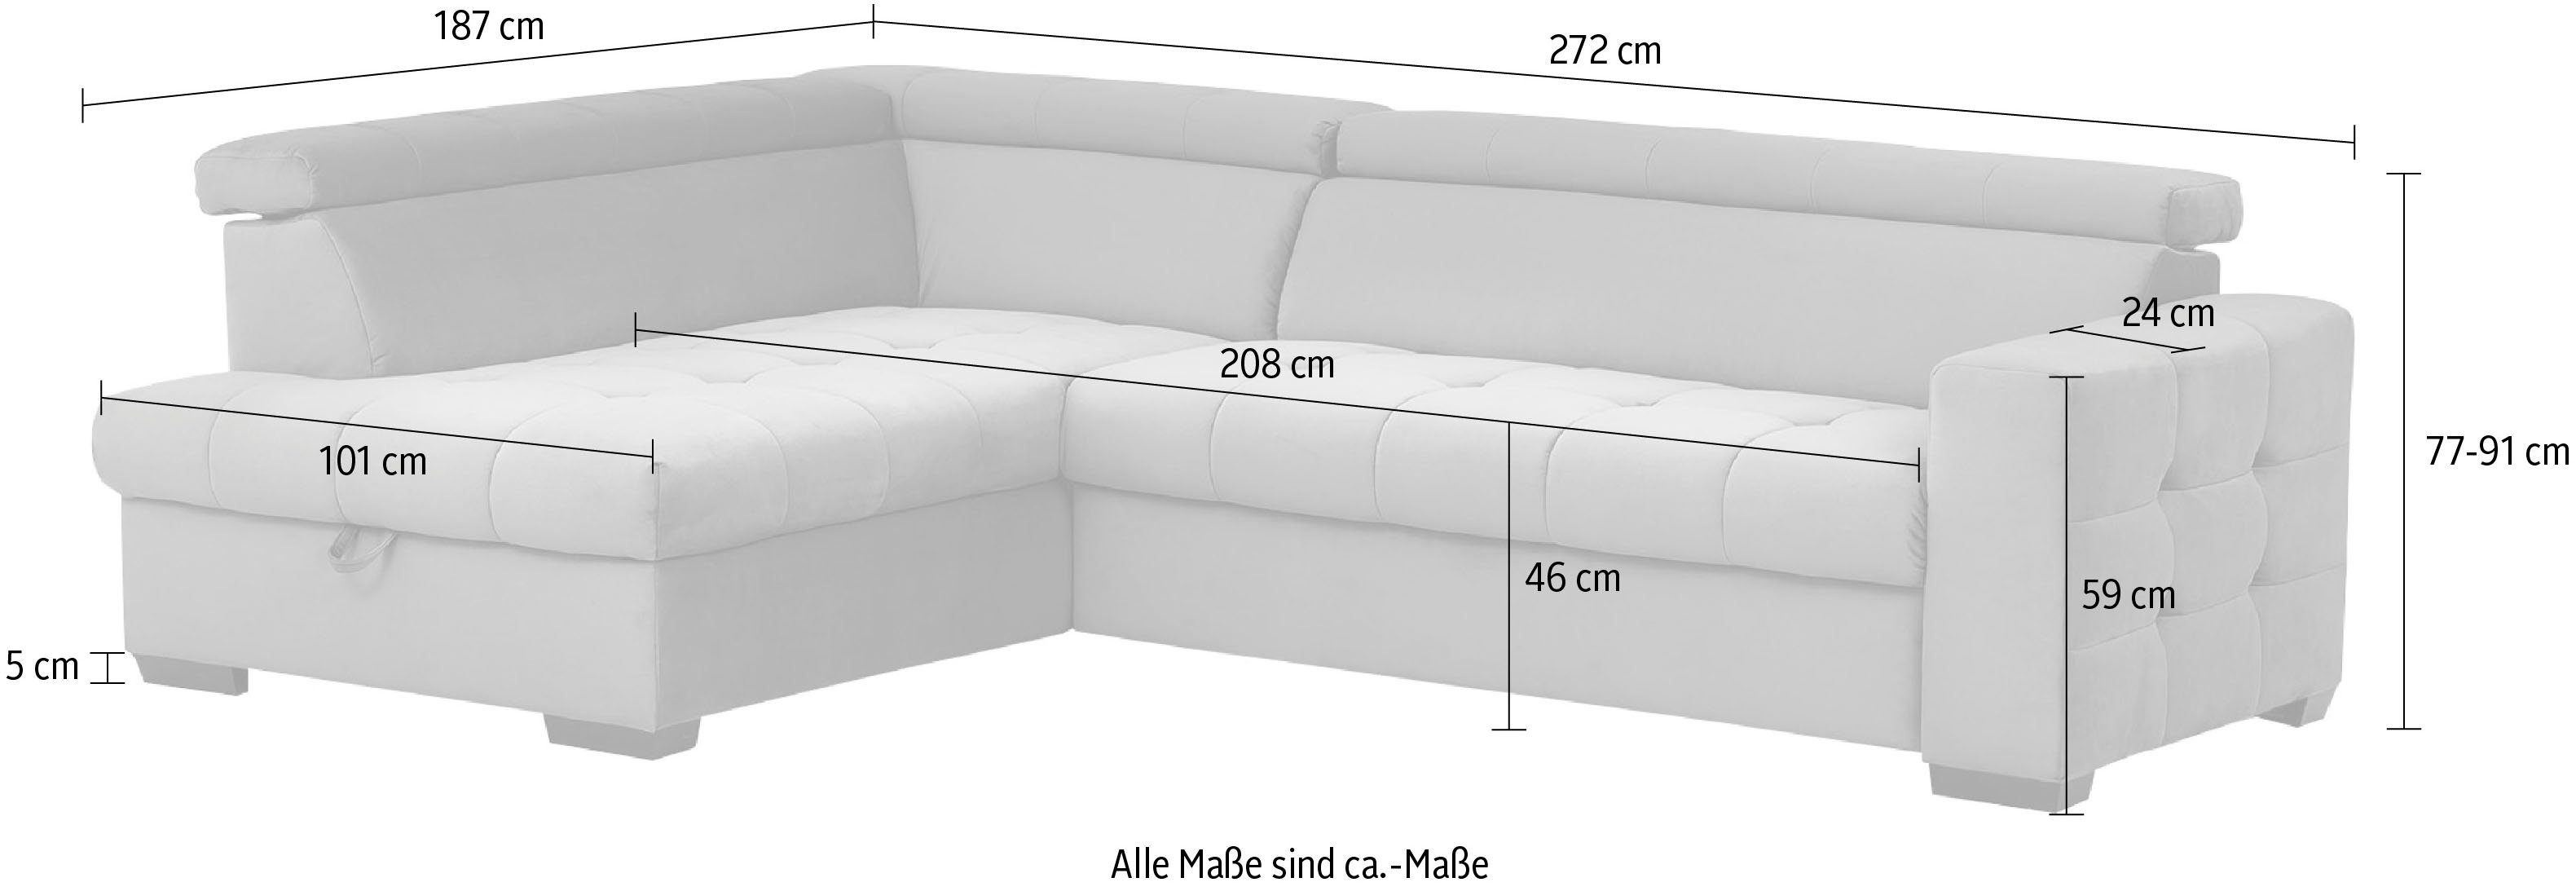 exxpo - Bettfunktion Bettkasten Sitzbereich, mit Wahlweise Steppung fashion Ecksofa und sofa Otusso, im